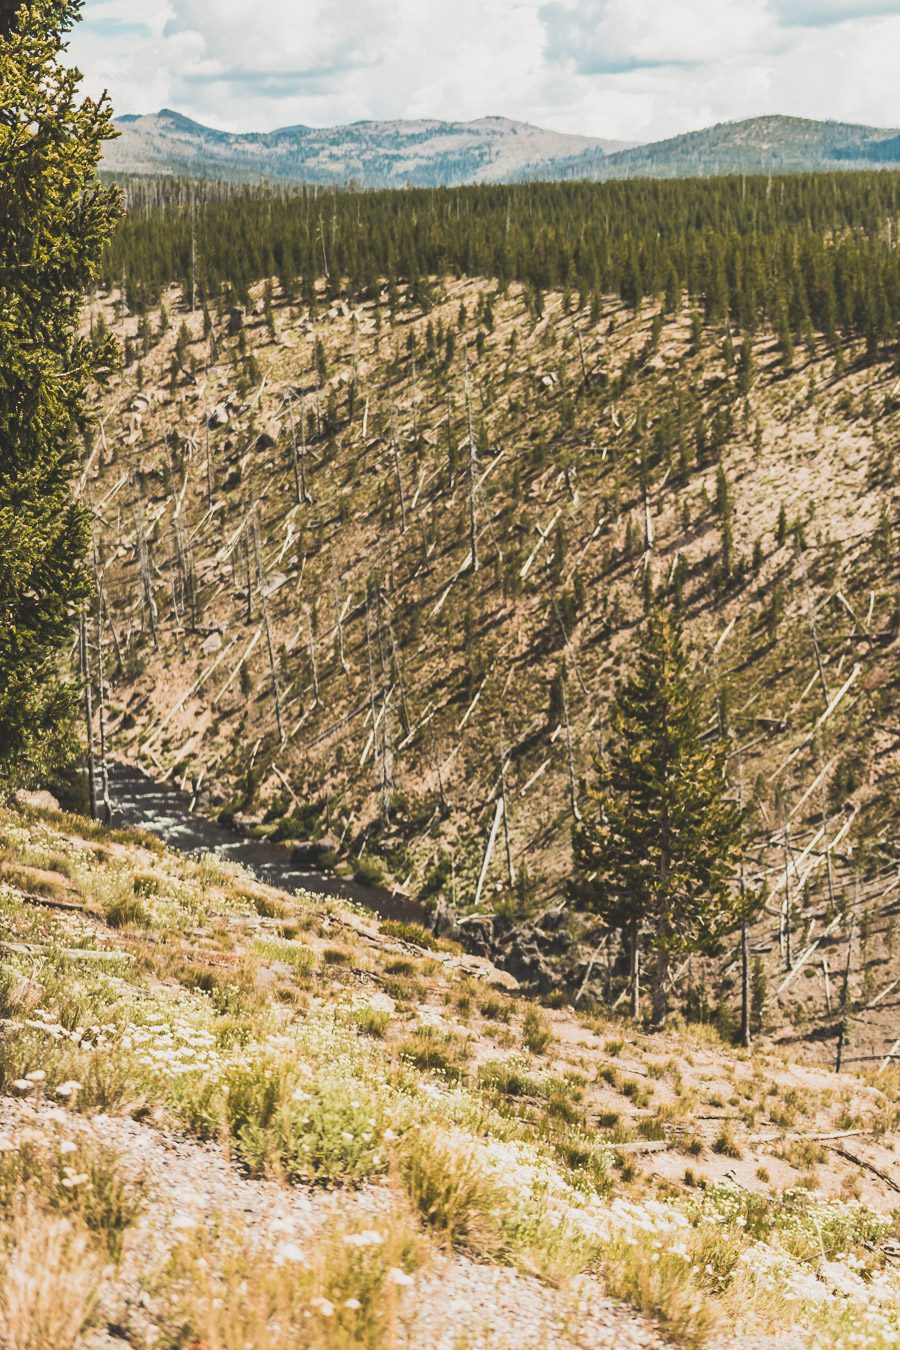 Situé aux États-Unis, le parc national de Yellowstone est l'une des destinations les plus impressionnantes et pittoresques au monde. Visiter Yellowstone, c’est découvrir des paysages époustouflants, allant des forêts, des geysers et des sources chaudes aux canyons et aux vastes prairies ouvertes, Yellowstone est vraiment un endroit pas comme les autres. Des incroyables opportunités d'observation de la faune aux randonnées, il y a quelque chose pour tous dans le parc national de Yellowstone.